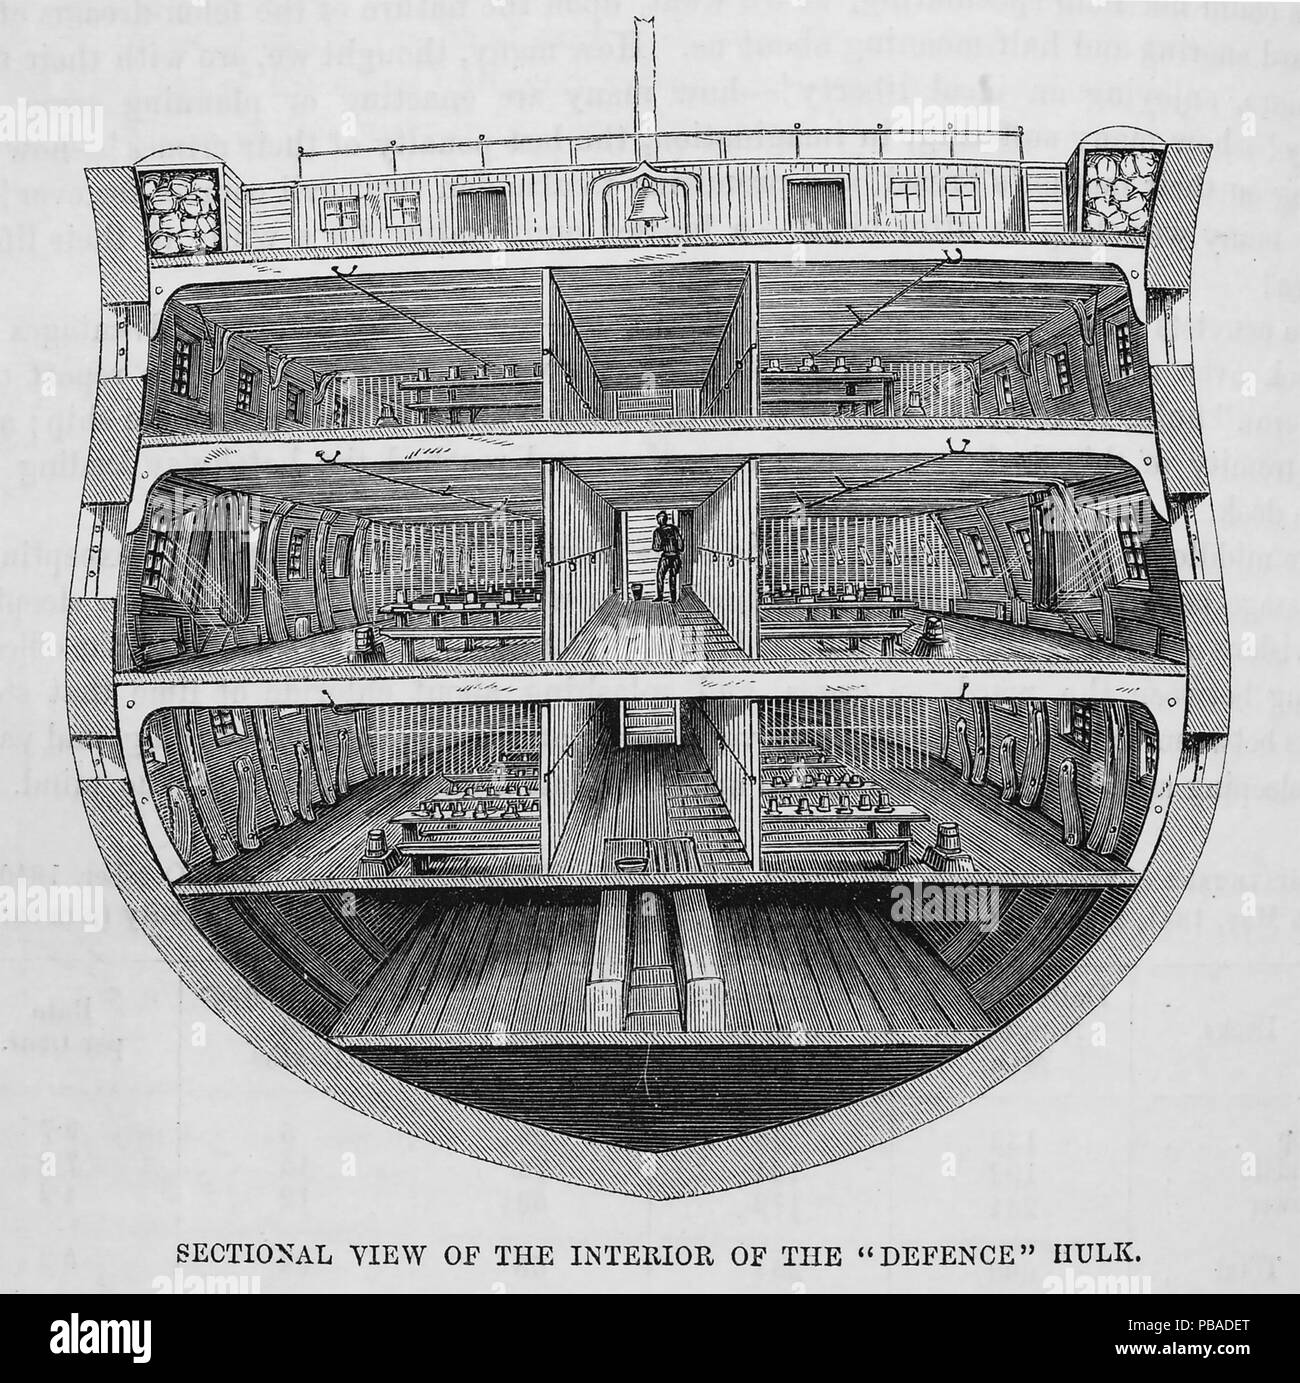 Vittoriano nelle prigioni di Hulk. Sezione trasversale della de-commissionato 74-gun terzo tasso nave "difesa" utilizzato come hulk nave prigione a Woolwich e Portsmoutyh dal 1850 al 1857 Foto Stock